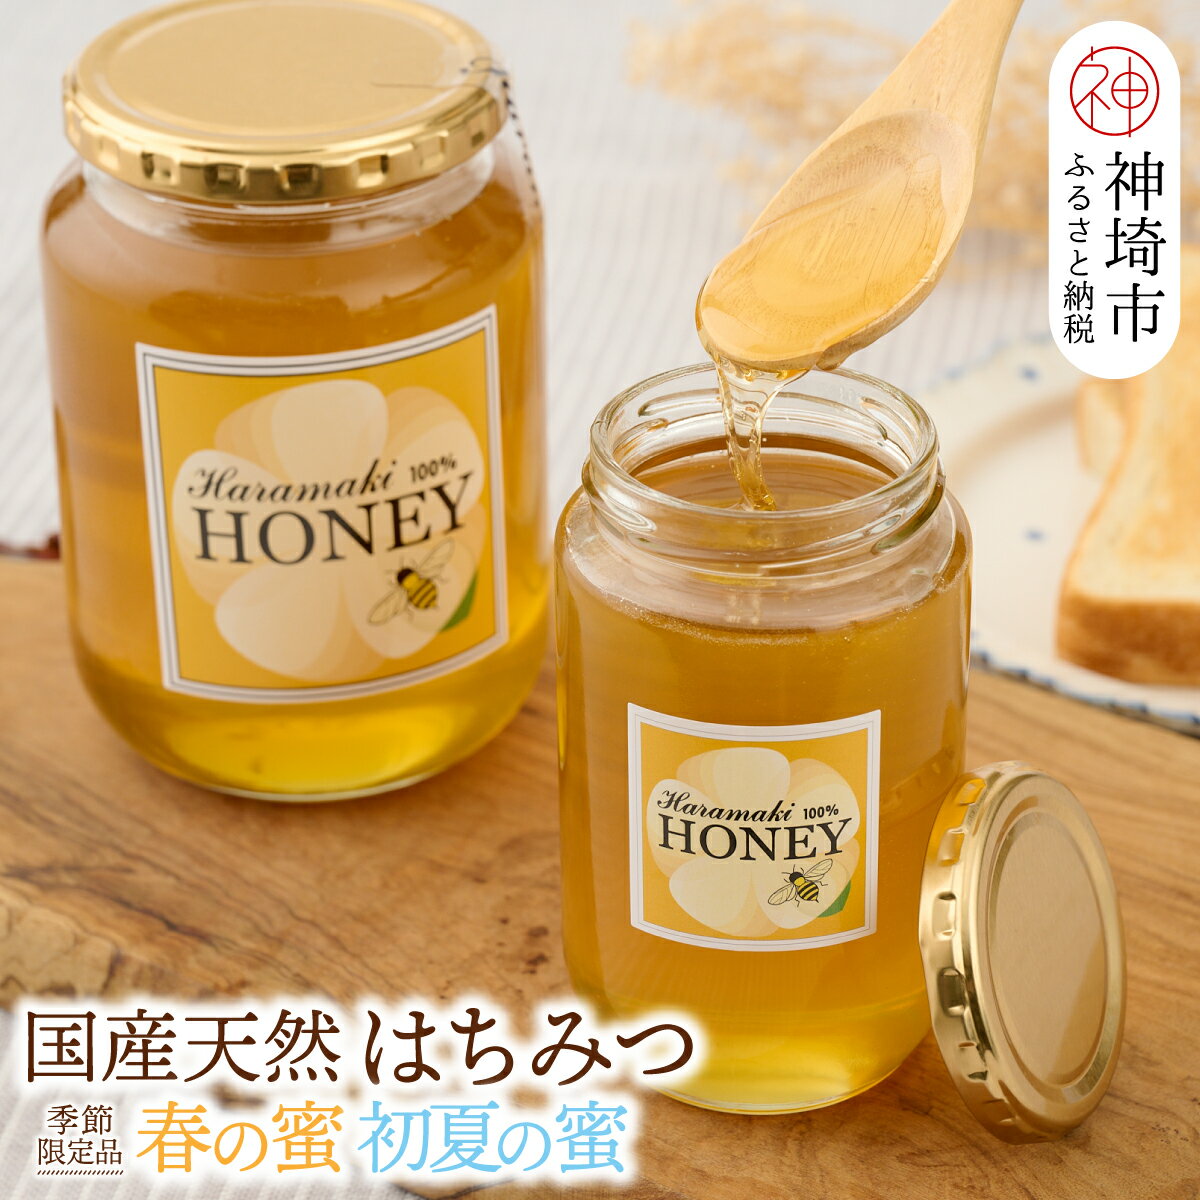 [春の蜜 & 初夏の蜜セット]国産天然蜂蜜 春の蜜 & 初夏の蜜